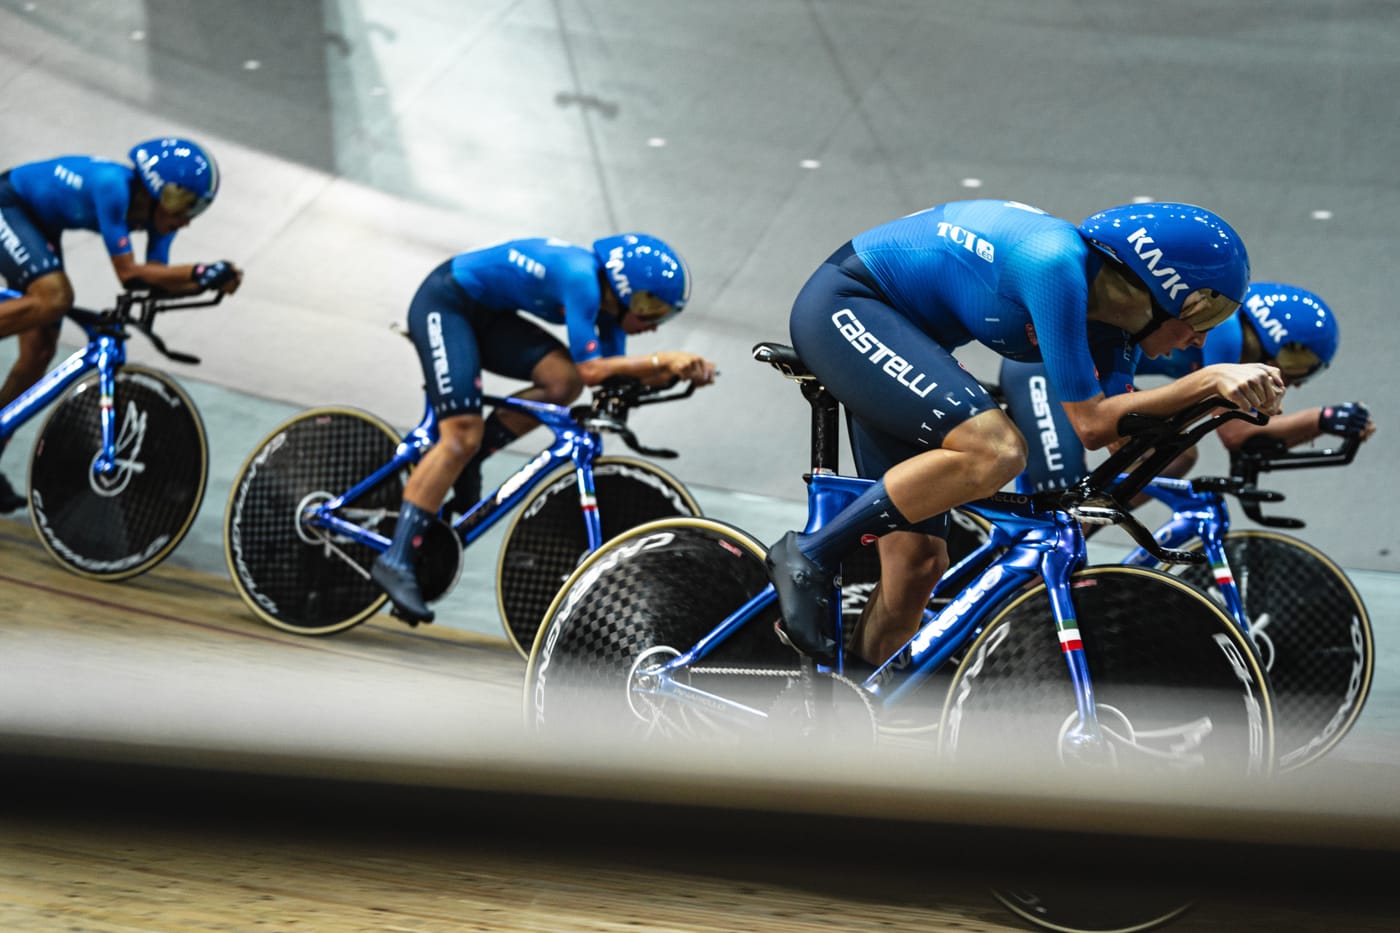 Итальянки показали лучшее время в квалификации командной гонки преследования на чемпионате мира по трековому велоспорту